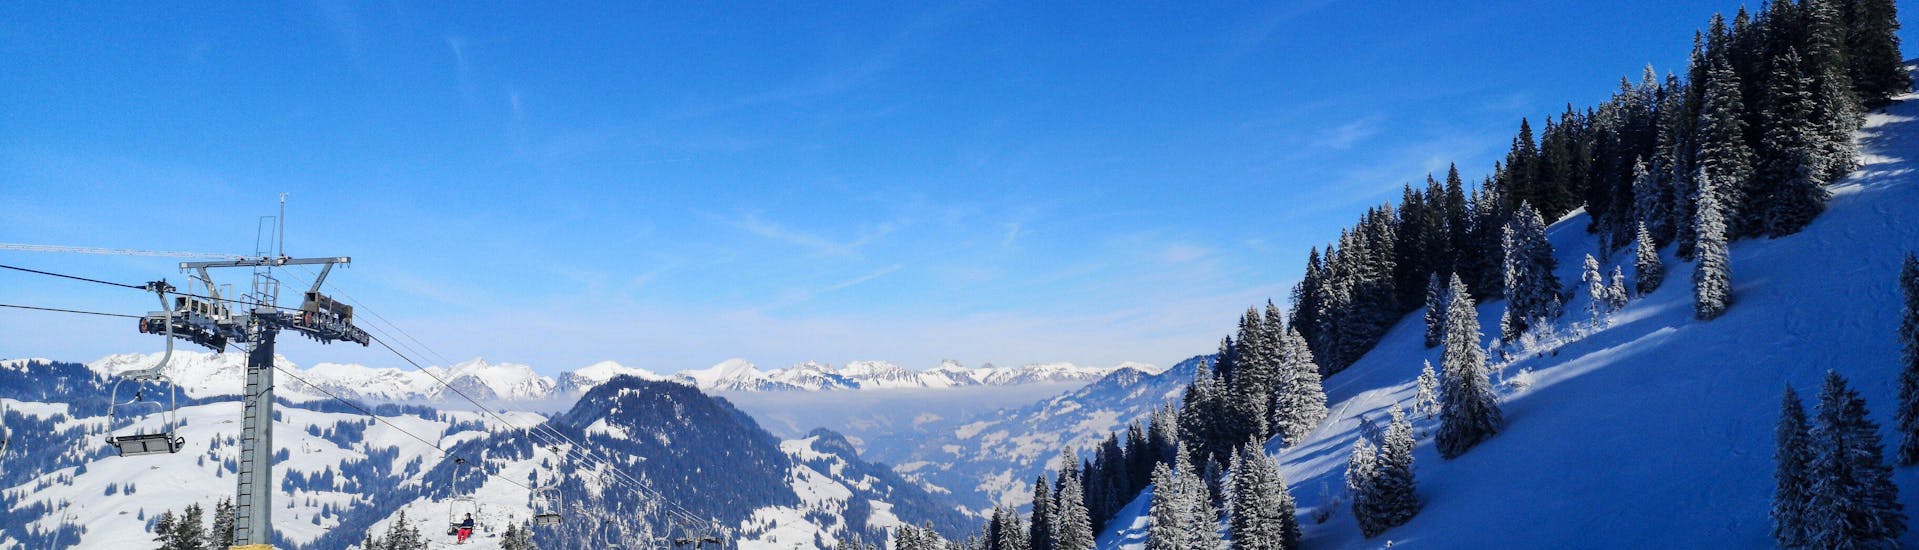 Ausblick auf die sonnige Berglandschaft beim Skifahren lernen mit den Skischulen im Skigebiet Schönried-Saanenmöser-Zweisimmen.